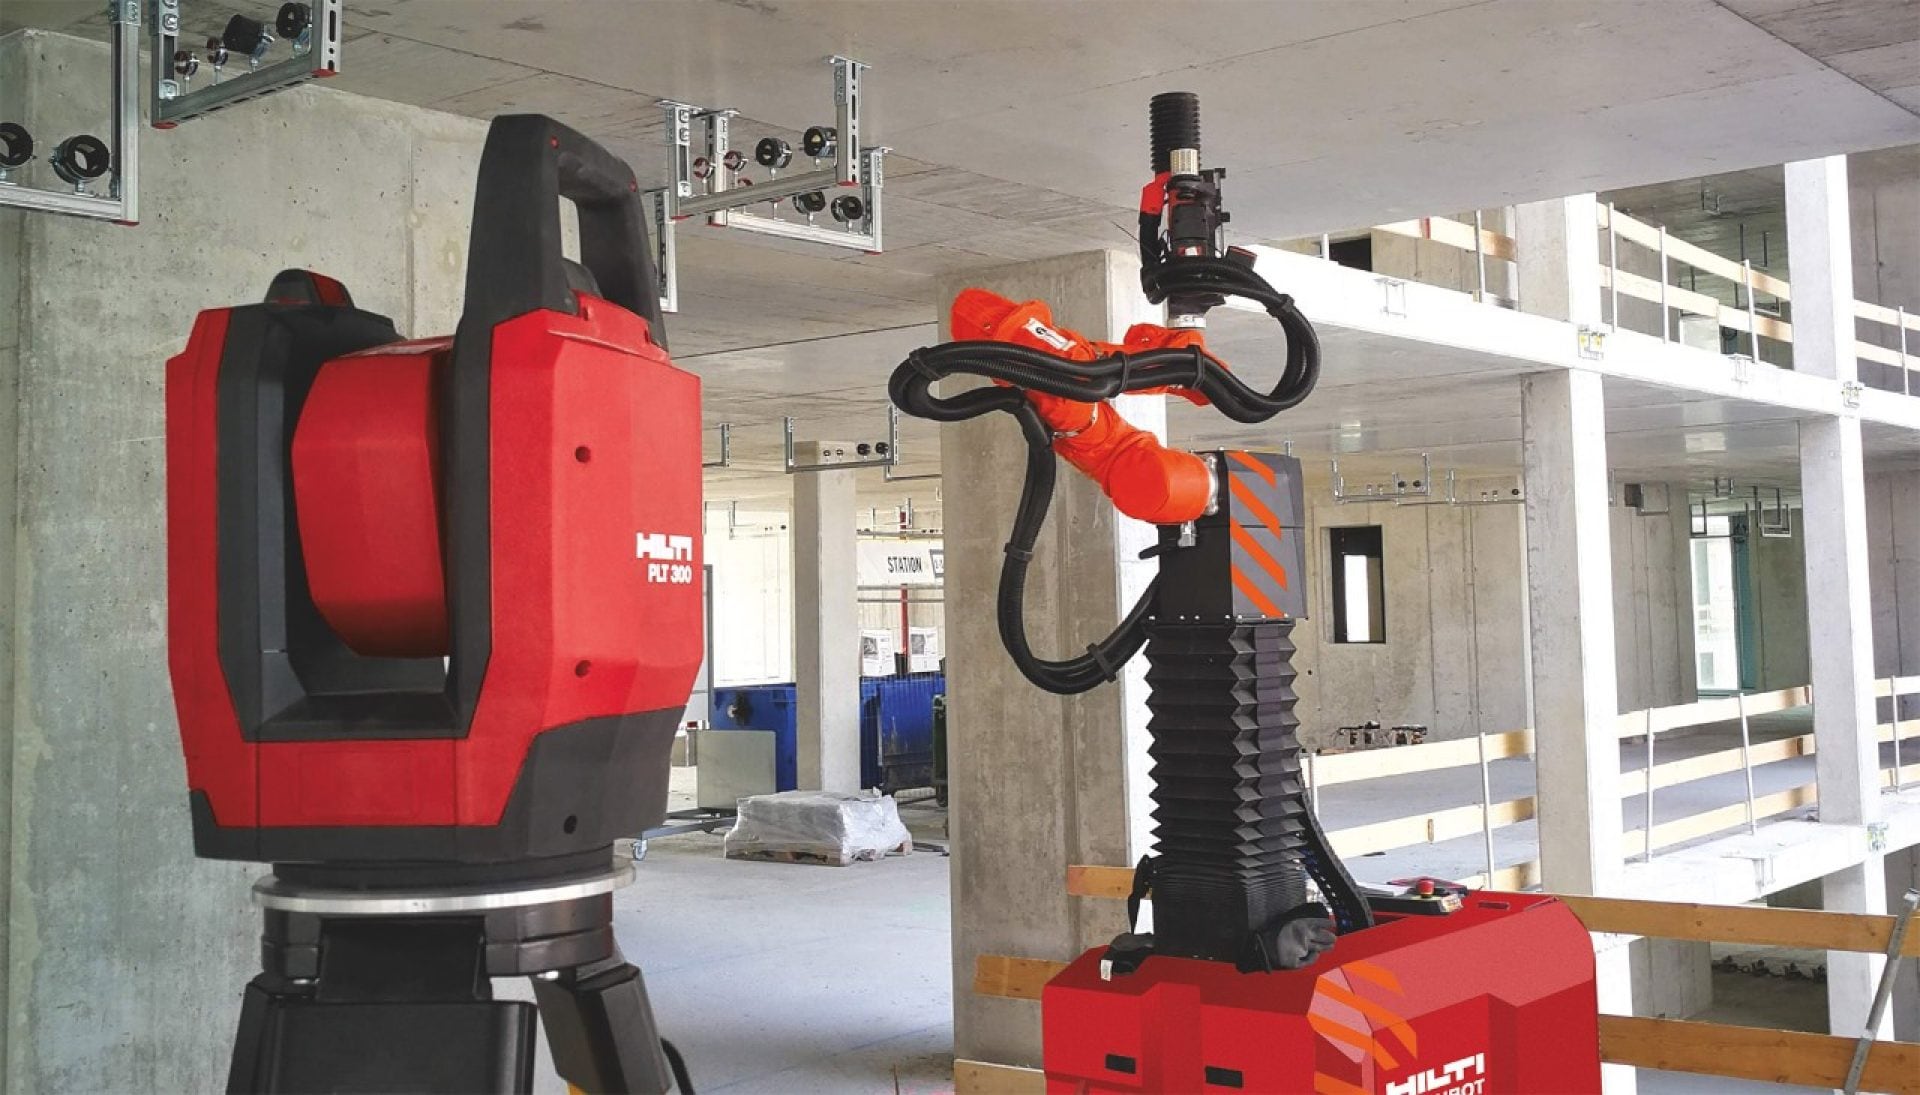 Station totale Hilti PLT 300 et robot de perçage Jaibot sur un chantier de construction pour la pose de supports MEP.